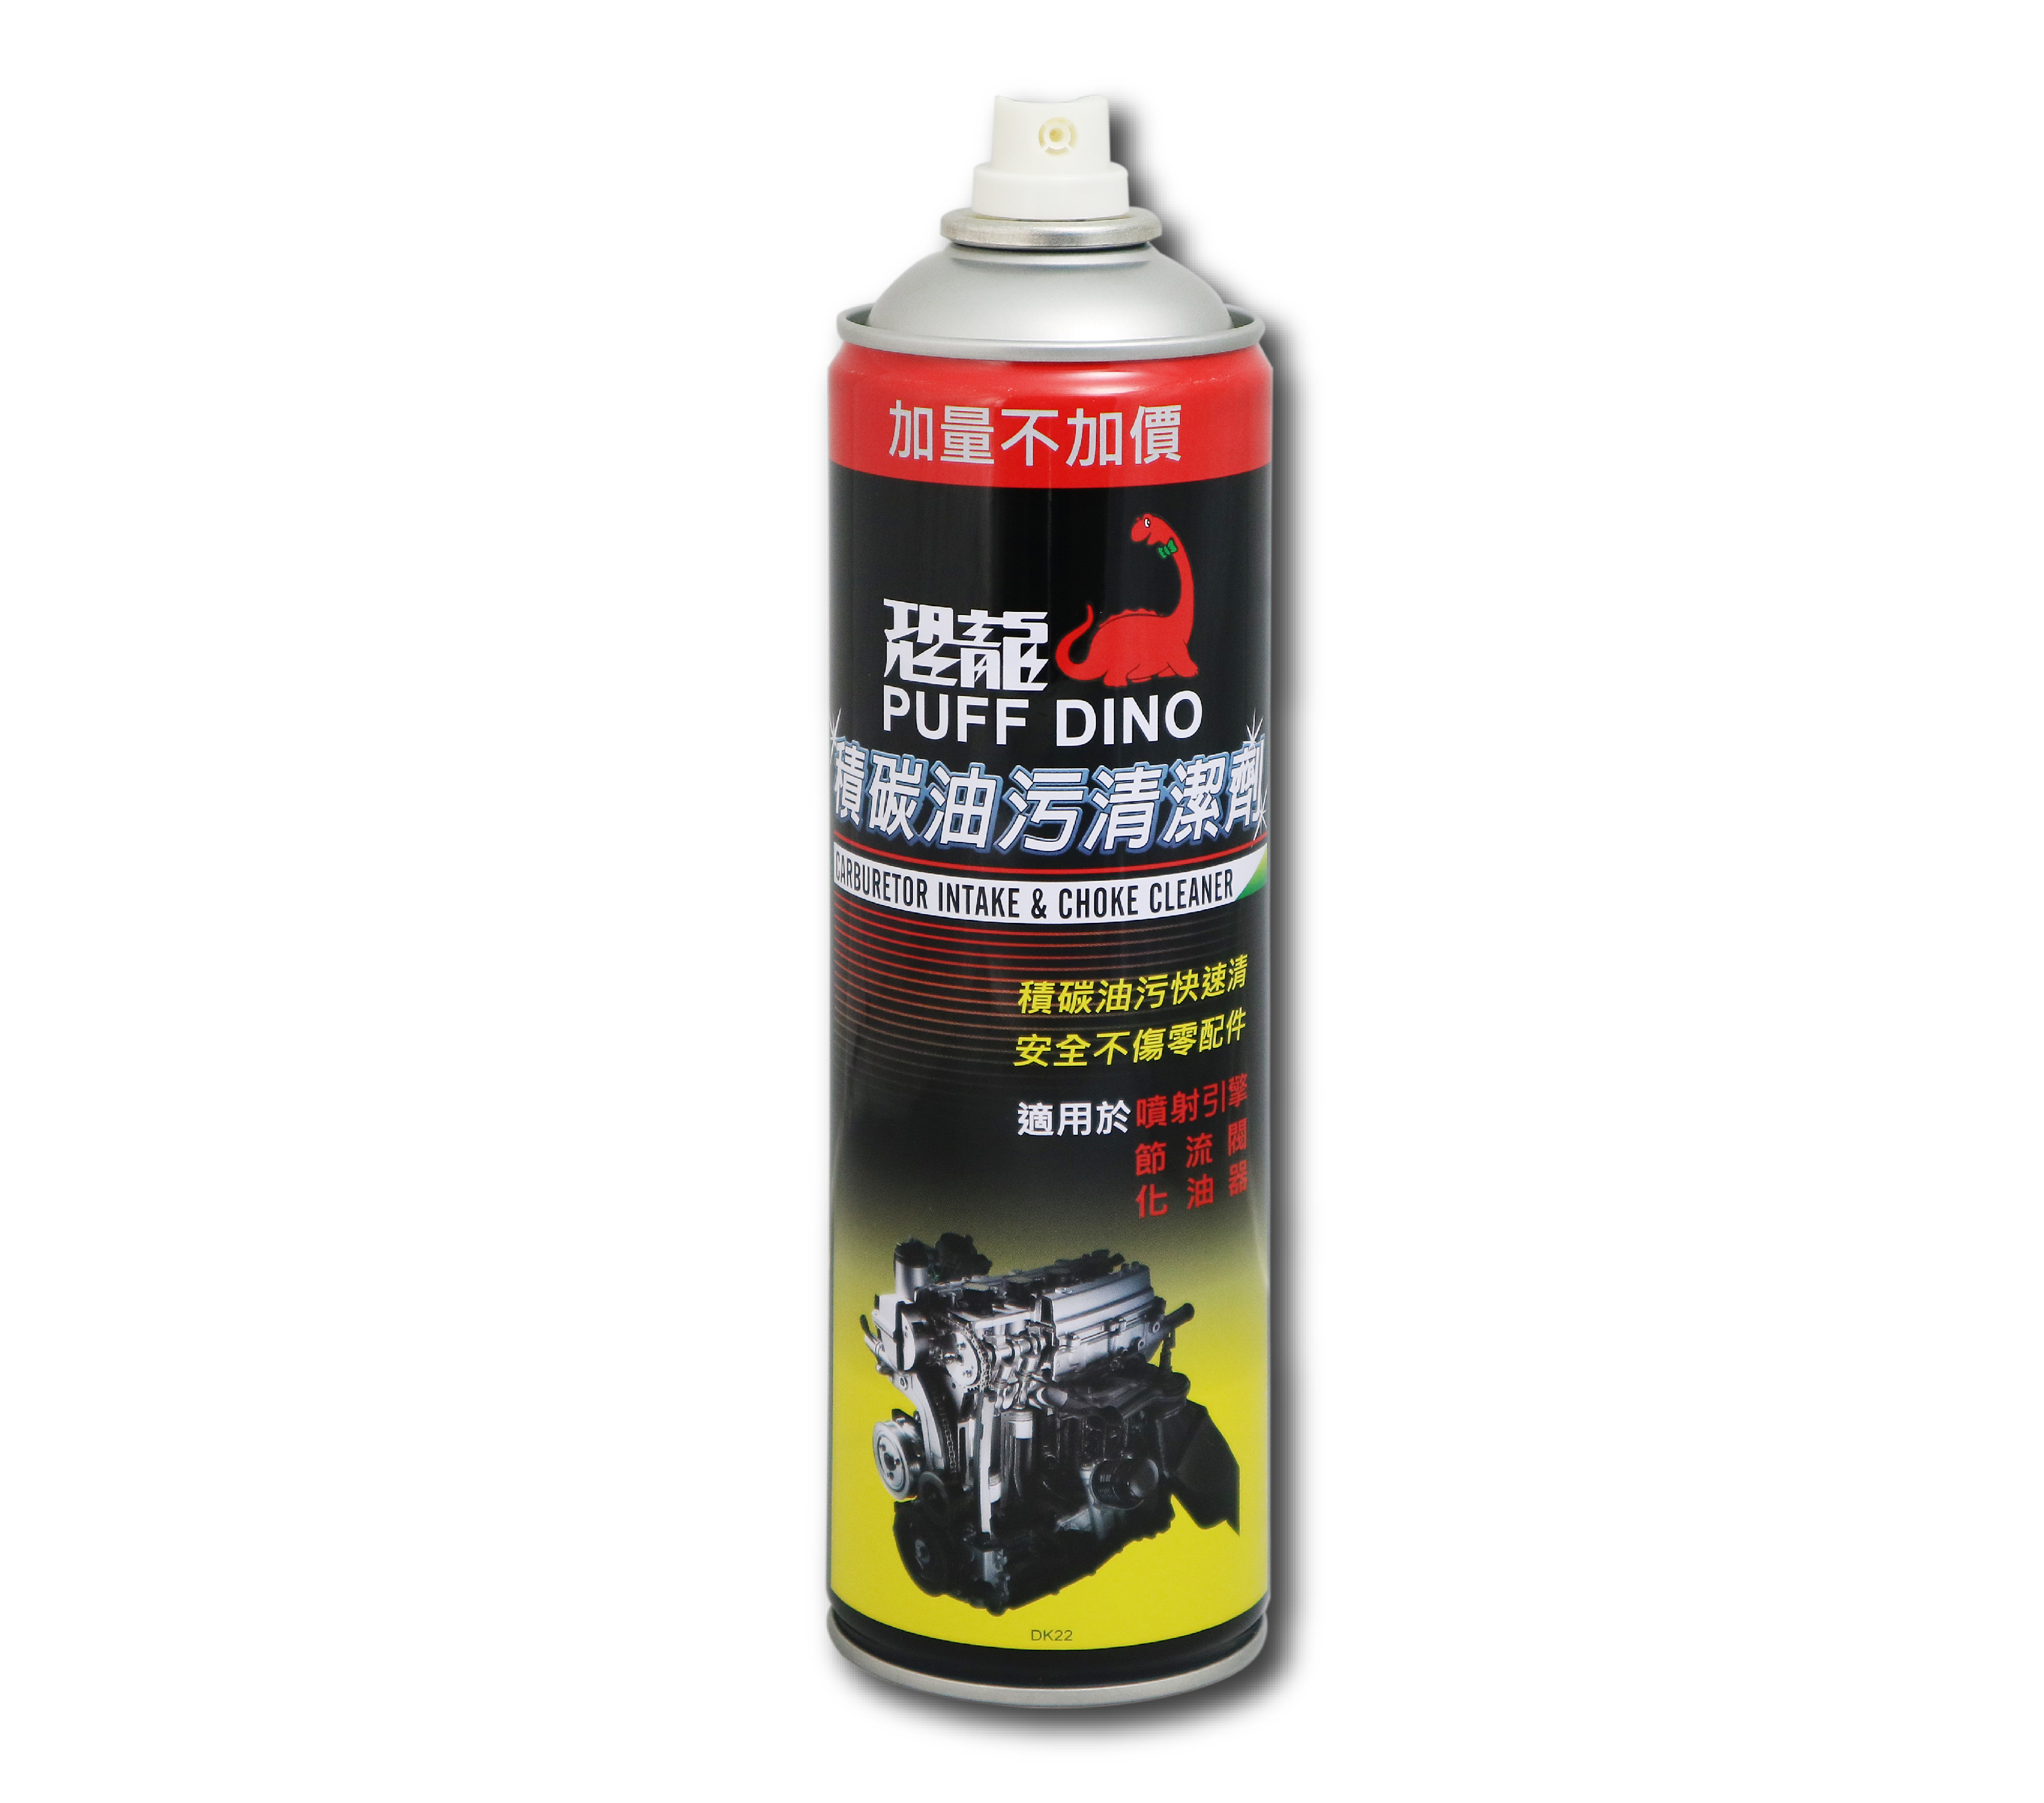 Car Care Choke Cleaner Carburetor Cleaner Spray - China Choke Cleaner and  Carburetor Cleaner